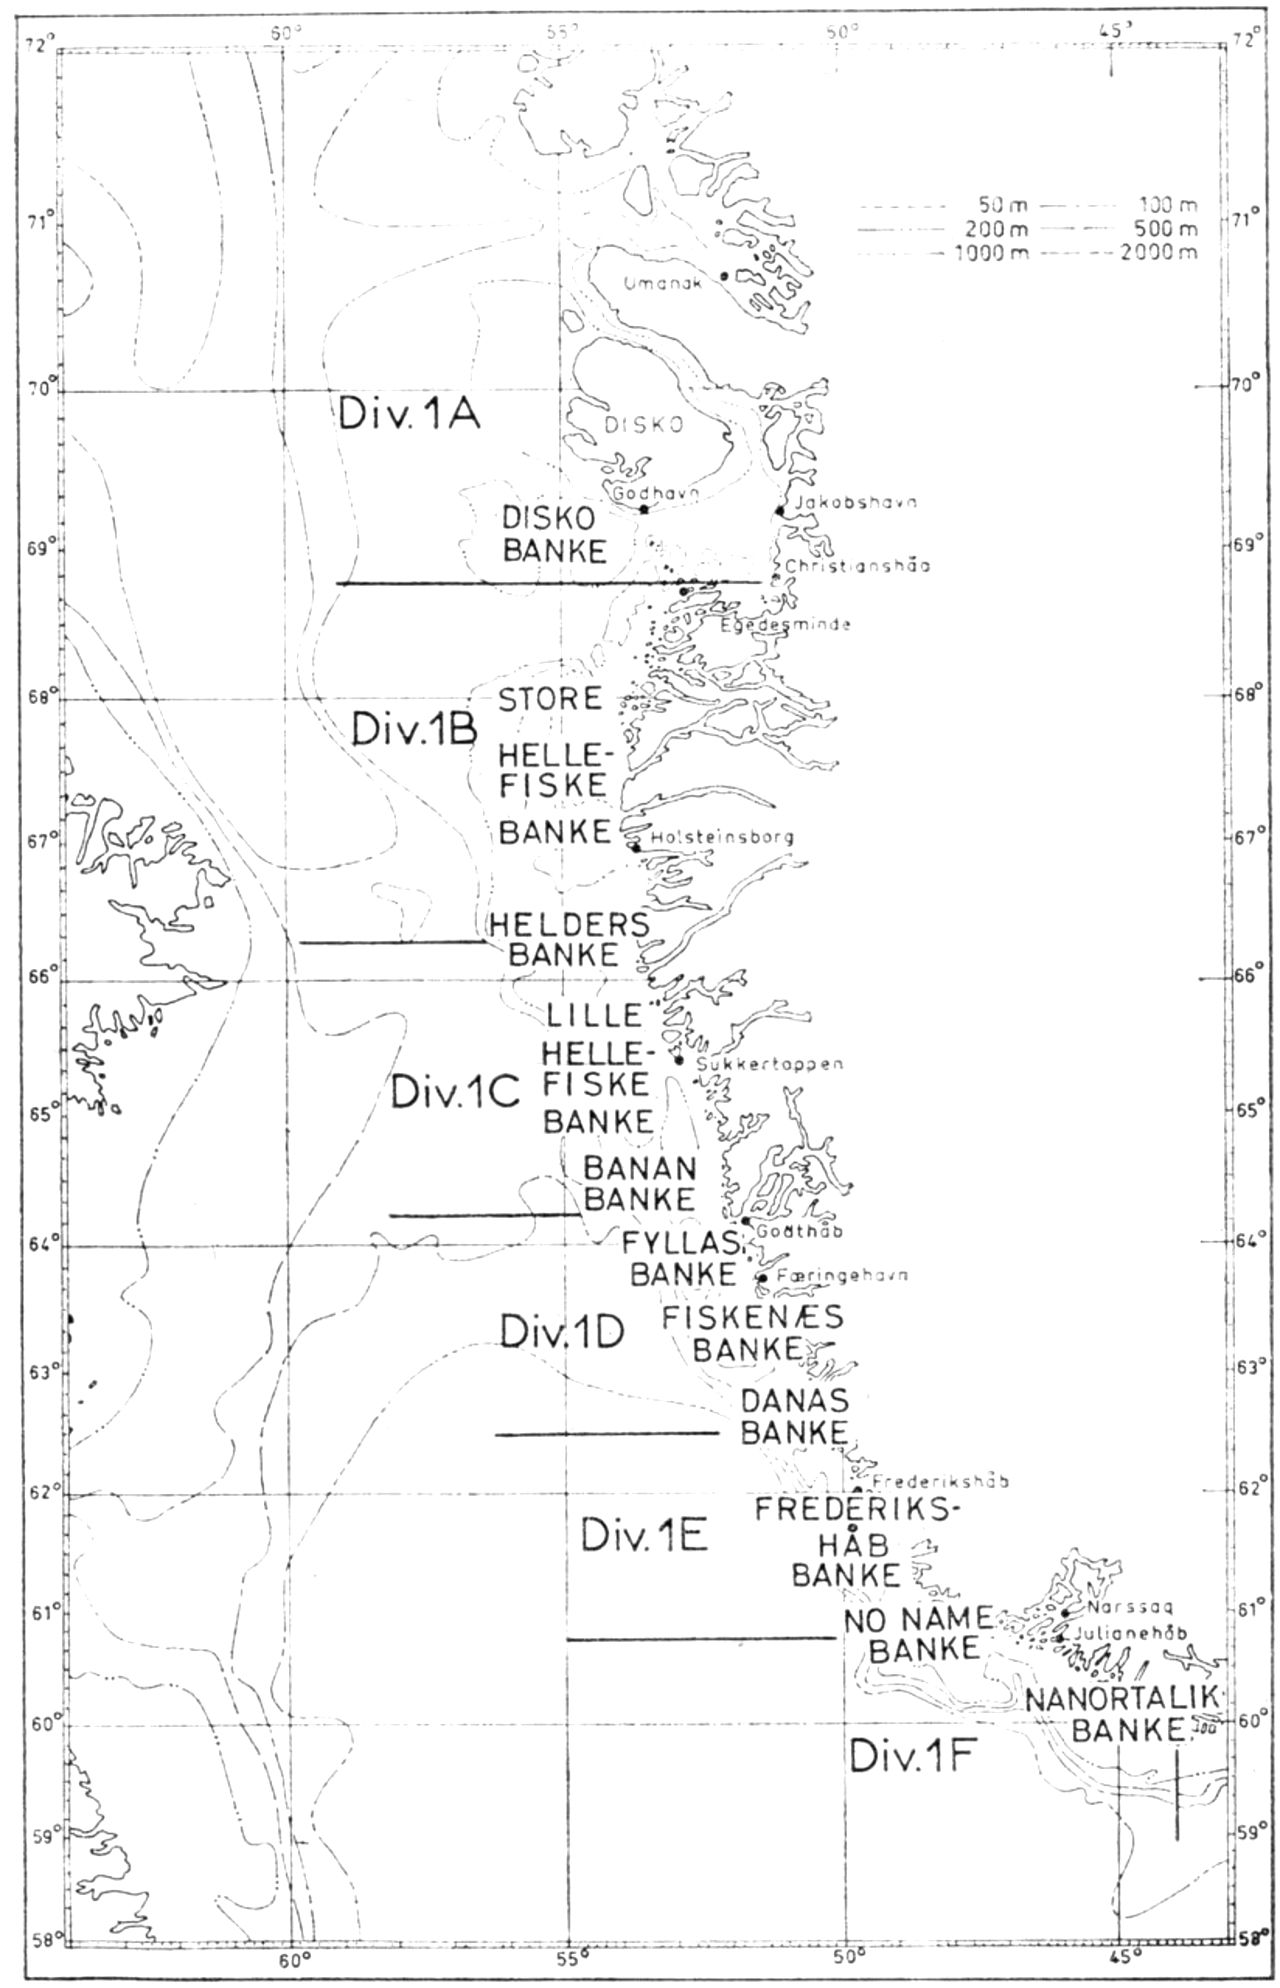 (Kort). De vestgrønlandske fiskebanker samt de områder (divisions), der benyttes i den internationale fiskeristatistik. (Efter P. M. Hansen 1967).